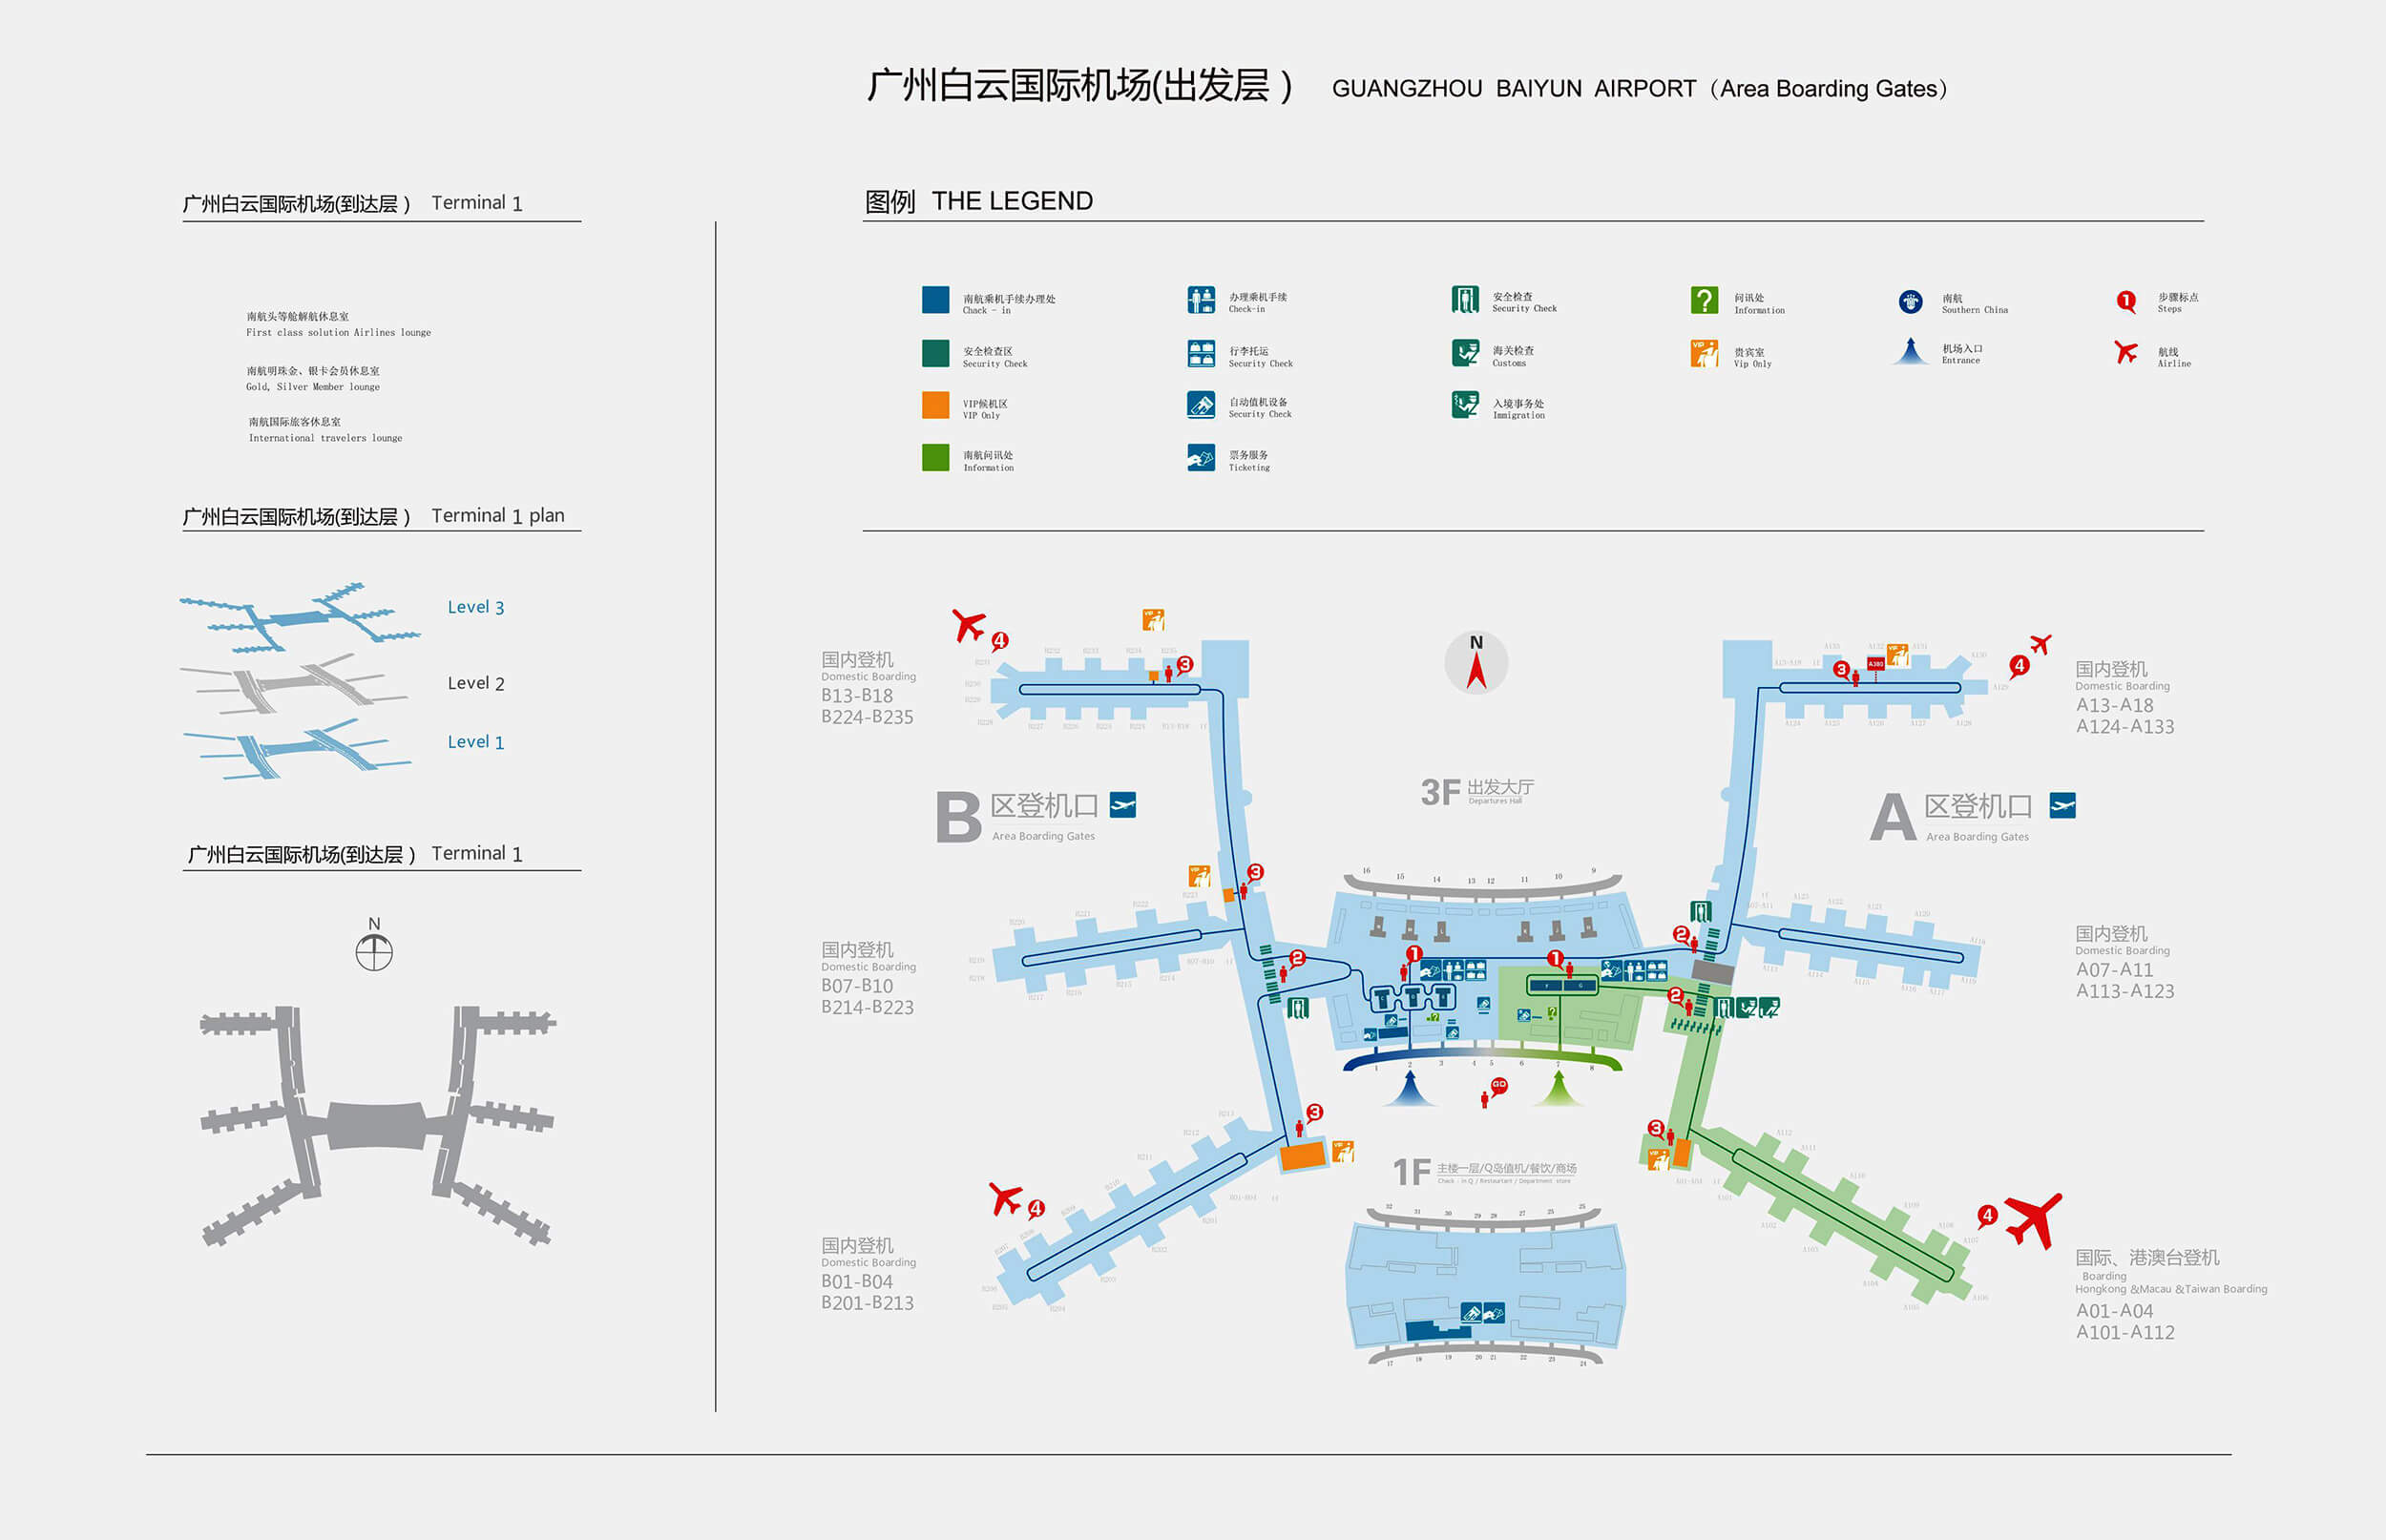 Guangzhou Airport Map